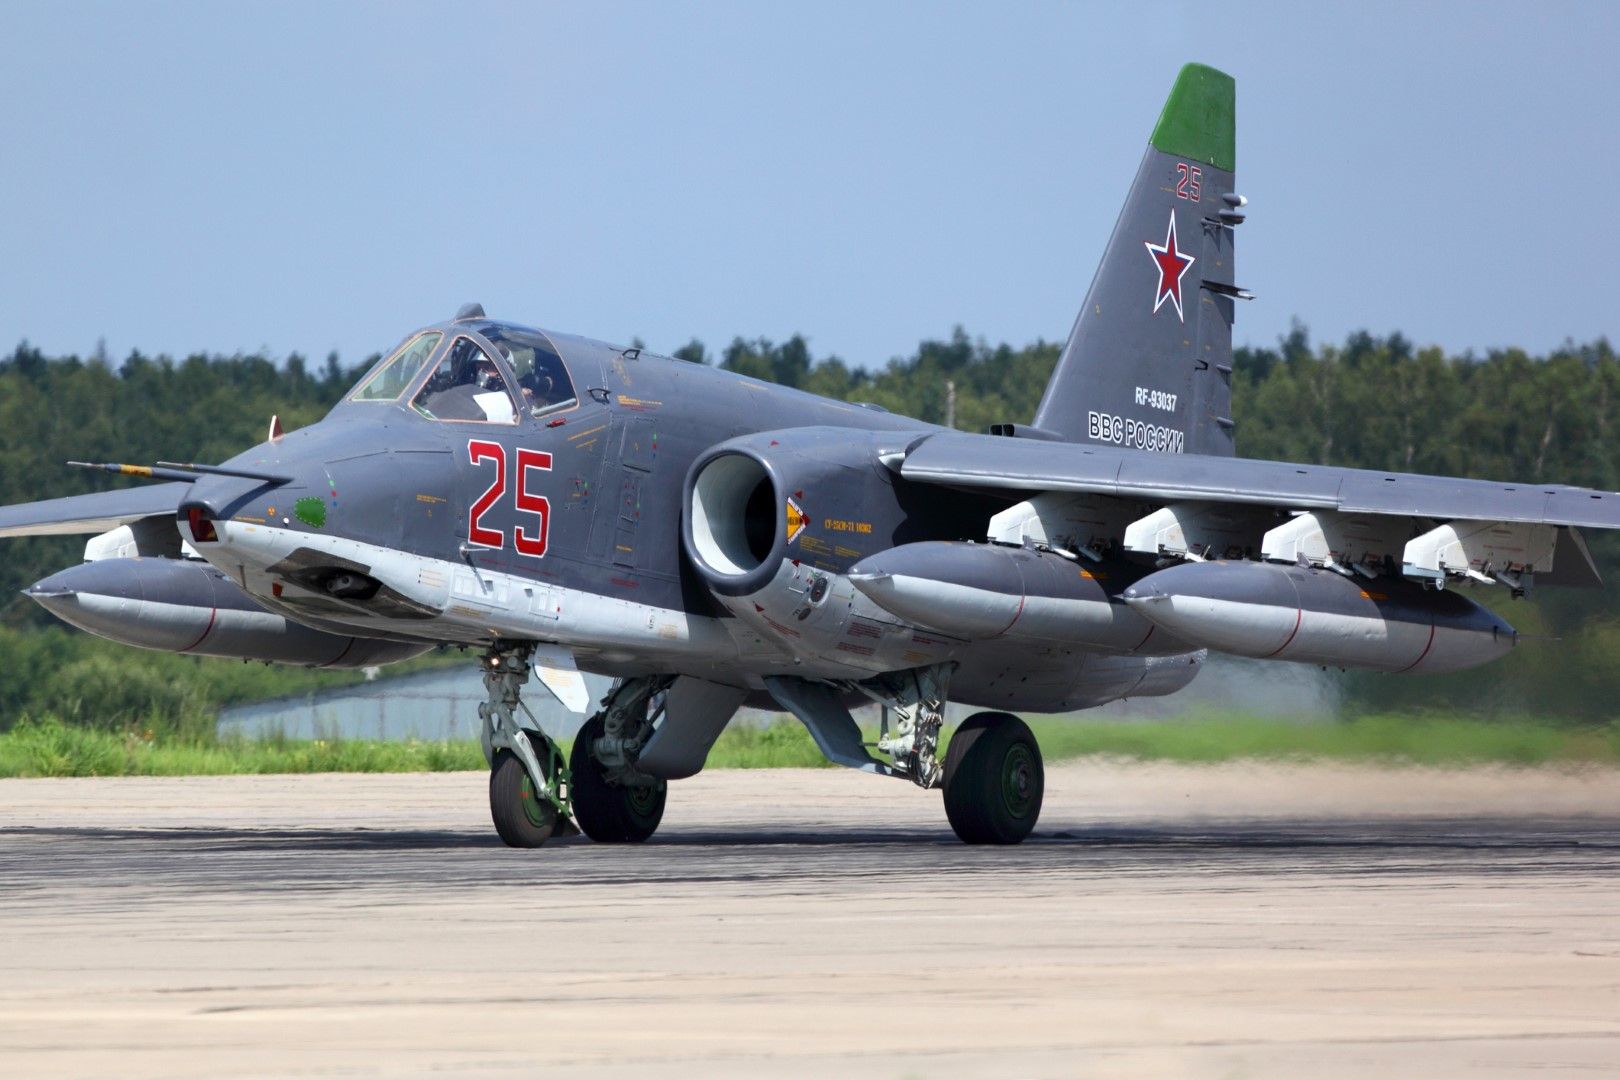 България засега няма условия за ремонт на Су-25. Председателят на Народното събрание покани руски специалисти да помогнат (снимка архив)